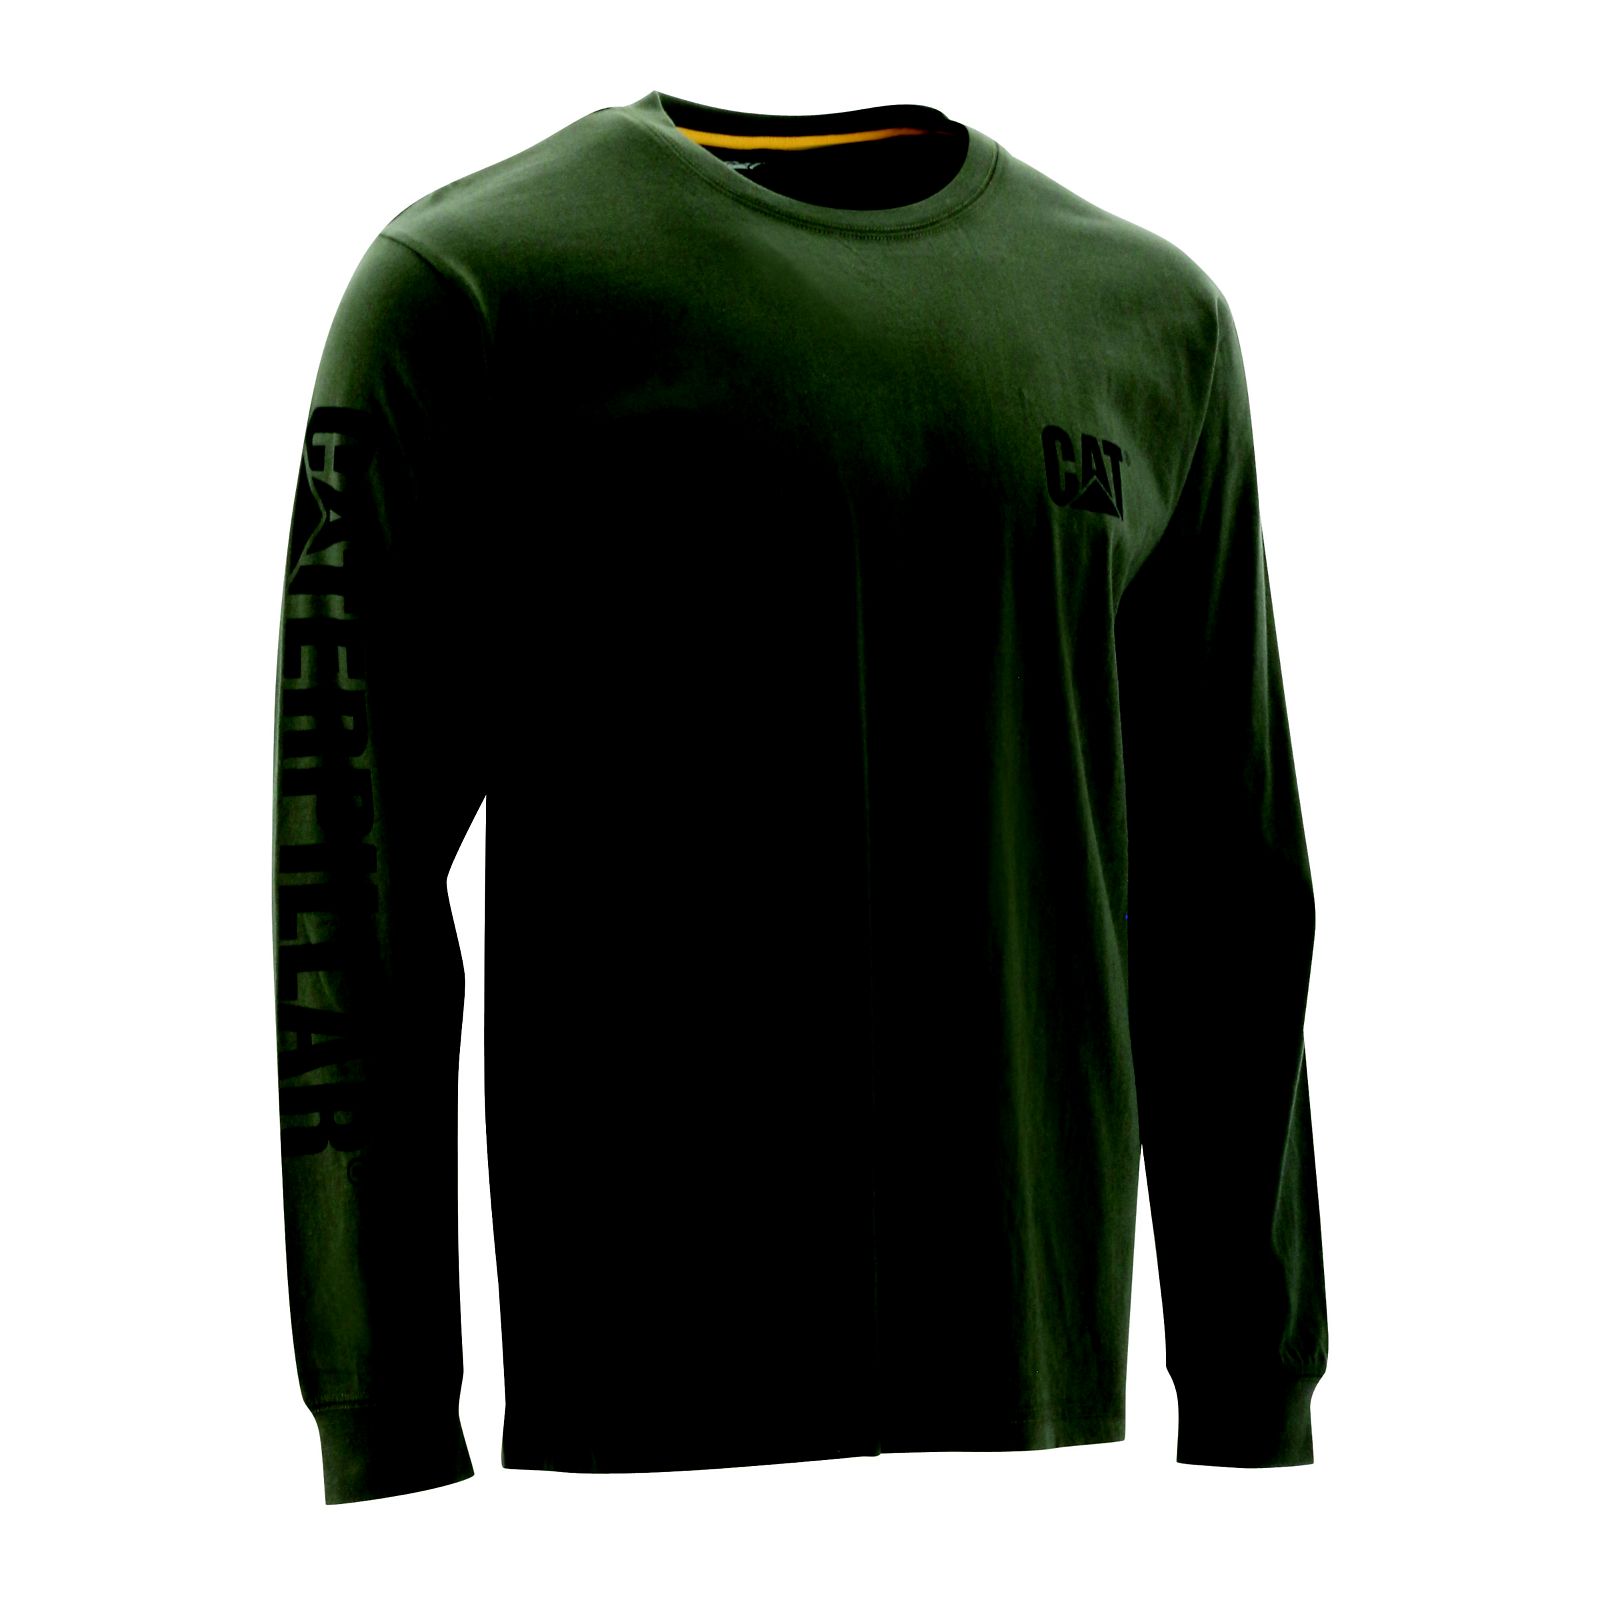 Caterpillar Clothing Online Pakistan - Caterpillar Trademark Banner Long Sleeve Mens T-Shirts Green (987601-VRU)